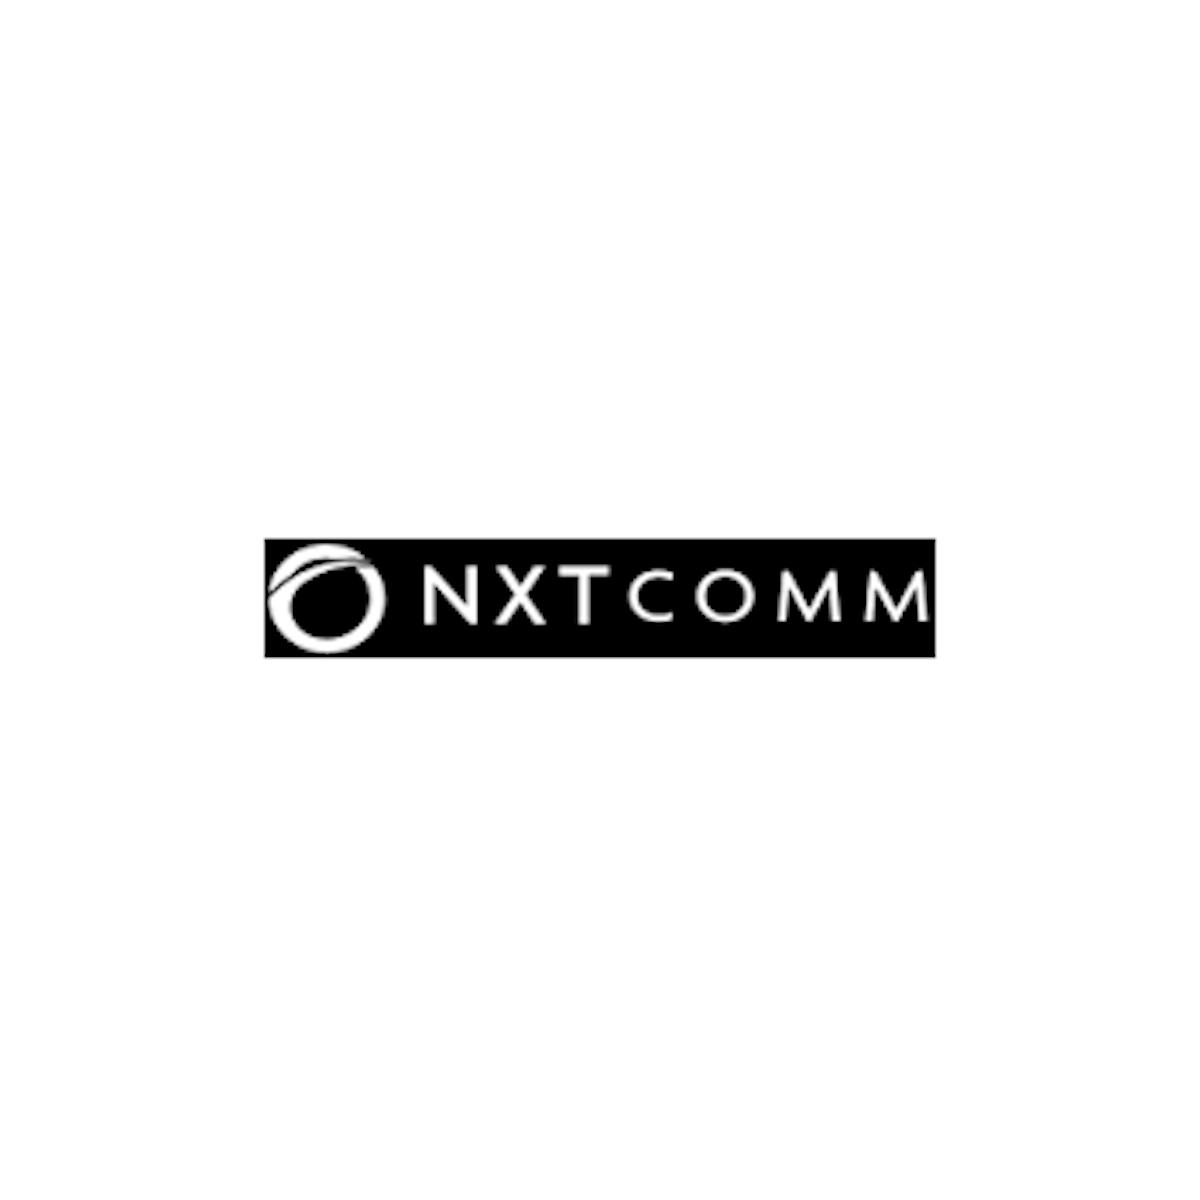 Nxtcomm